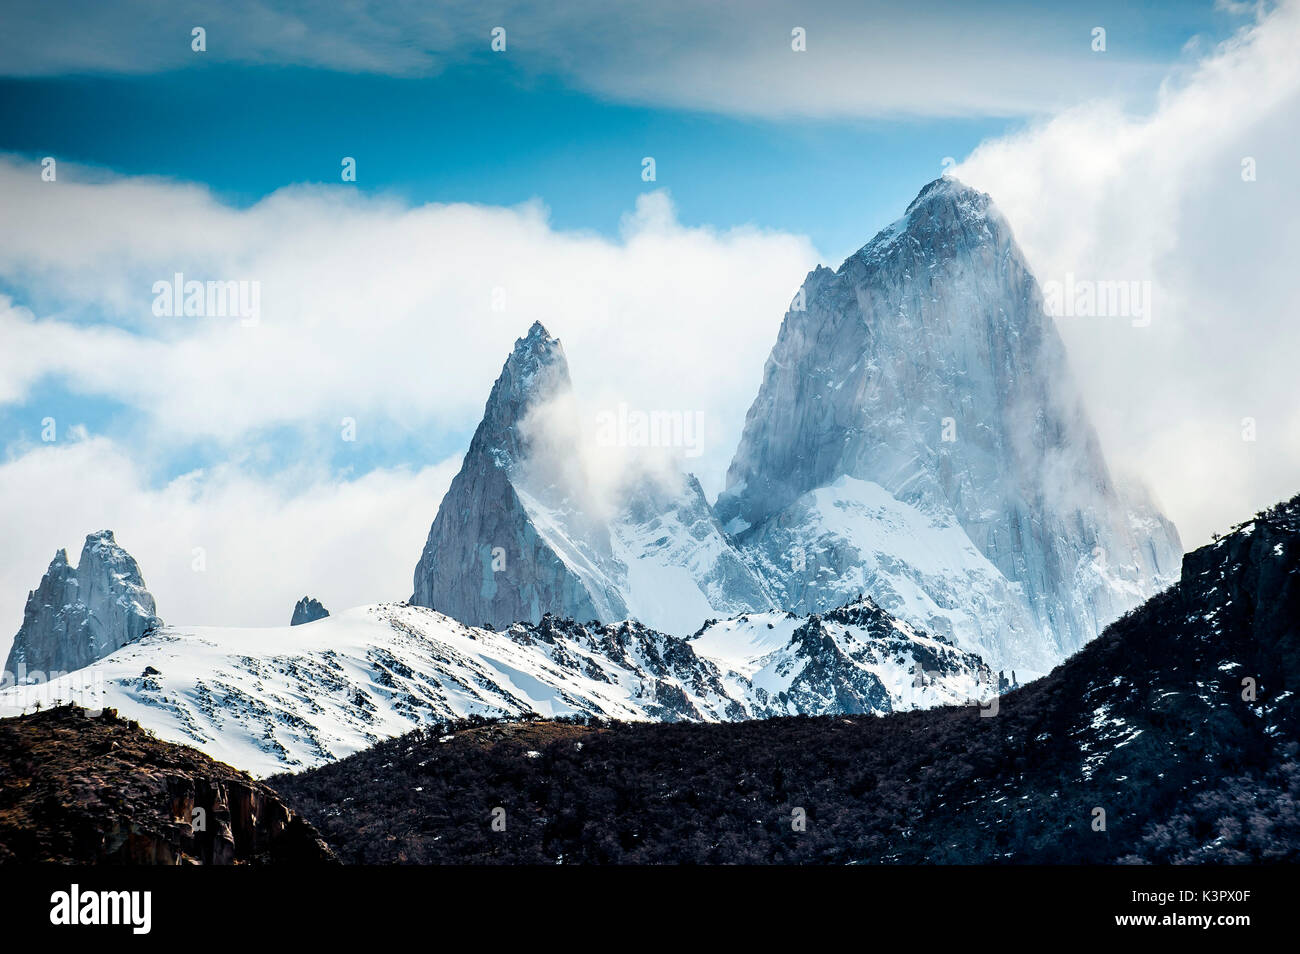 El Chaltén, Nationalpark Los Glaciares, Patagonien, Argentinien, Südamerika. Der Fitz Roy Berg in den Wolken. Stockfoto